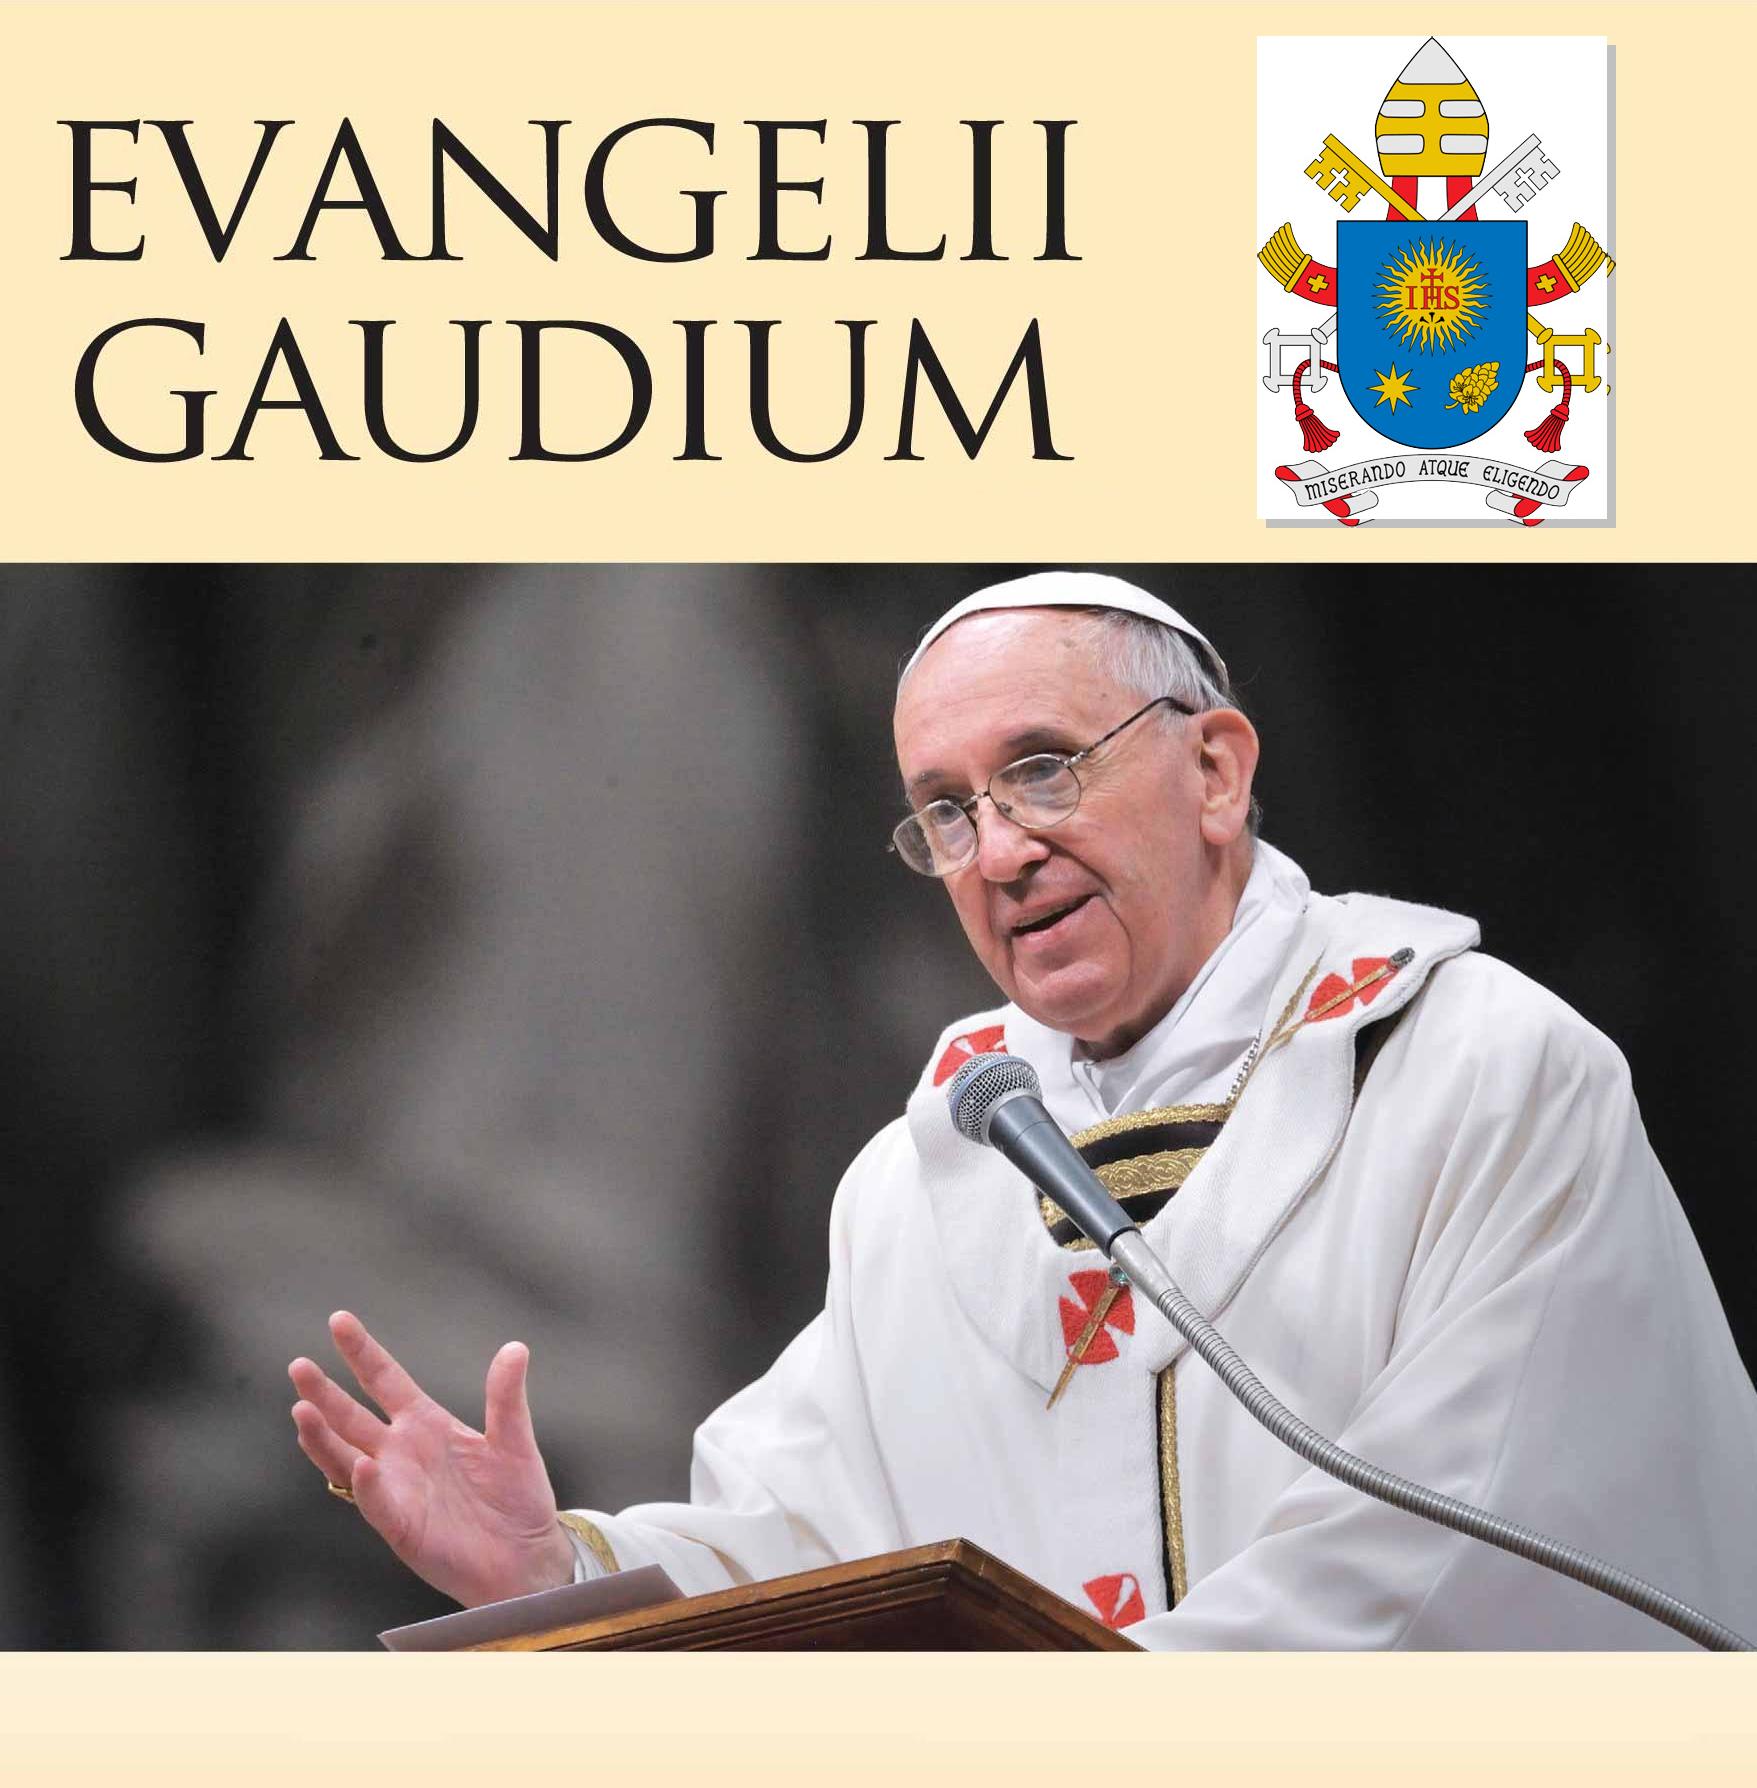 Evangelii gaudium3